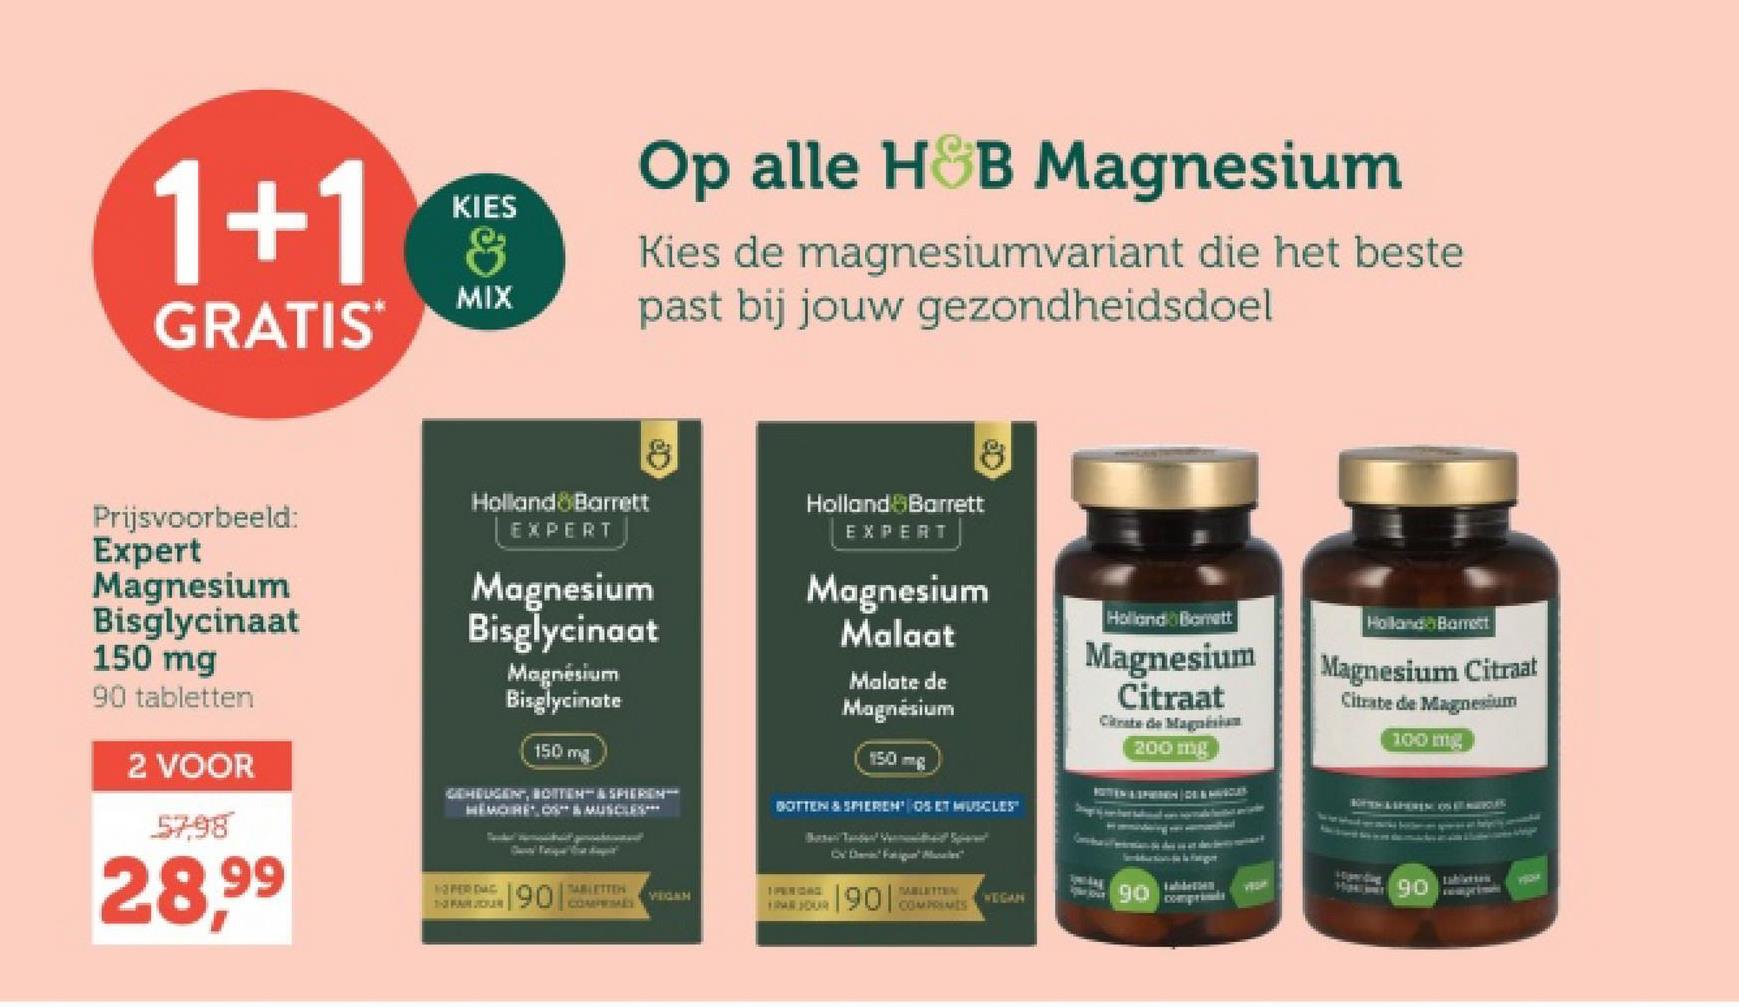 1+1
GRATIS
KIES
&
MIX
Op alle H&B Magnesium
Kies de magnesiumvariant die het beste
past bij jouw gezondheidsdoel
Prijsvoorbeeld:
Expert
Magnesium
Bisglycinaat
150 mg
90 tabletten
2 VOOR
57,98
28,99
Holland Barrett
EXPERT
8
Magnesium
Bisglycinaat
Magnésium
Bisglycinate
150 mg
GEHEUGENT, BOTTEN & SPIEREN
HEMOIRE, OS & MUSCLES
Holland Barrett
EXPERT
Magnesium
Malaat
Malate de
Magnésium
150 mg
BOTTEN & SPIEREN OS ET MUSCLES"
Holland Bomett
Magnesium
Citraat
Citrate de Magnesium
200 mg
Cv Fatigue Morales"
1- FAIR JOR
190
TABLETTER
COMPRIMÉS
VEGAH
1 PERIGAC
PABLETTEN
WEGAN
90
comprime
PER DAC
Holland Barrett
Magnesium Citraat
Citrate de Magnesium
100 mg
7724
H0
tablierten
YO